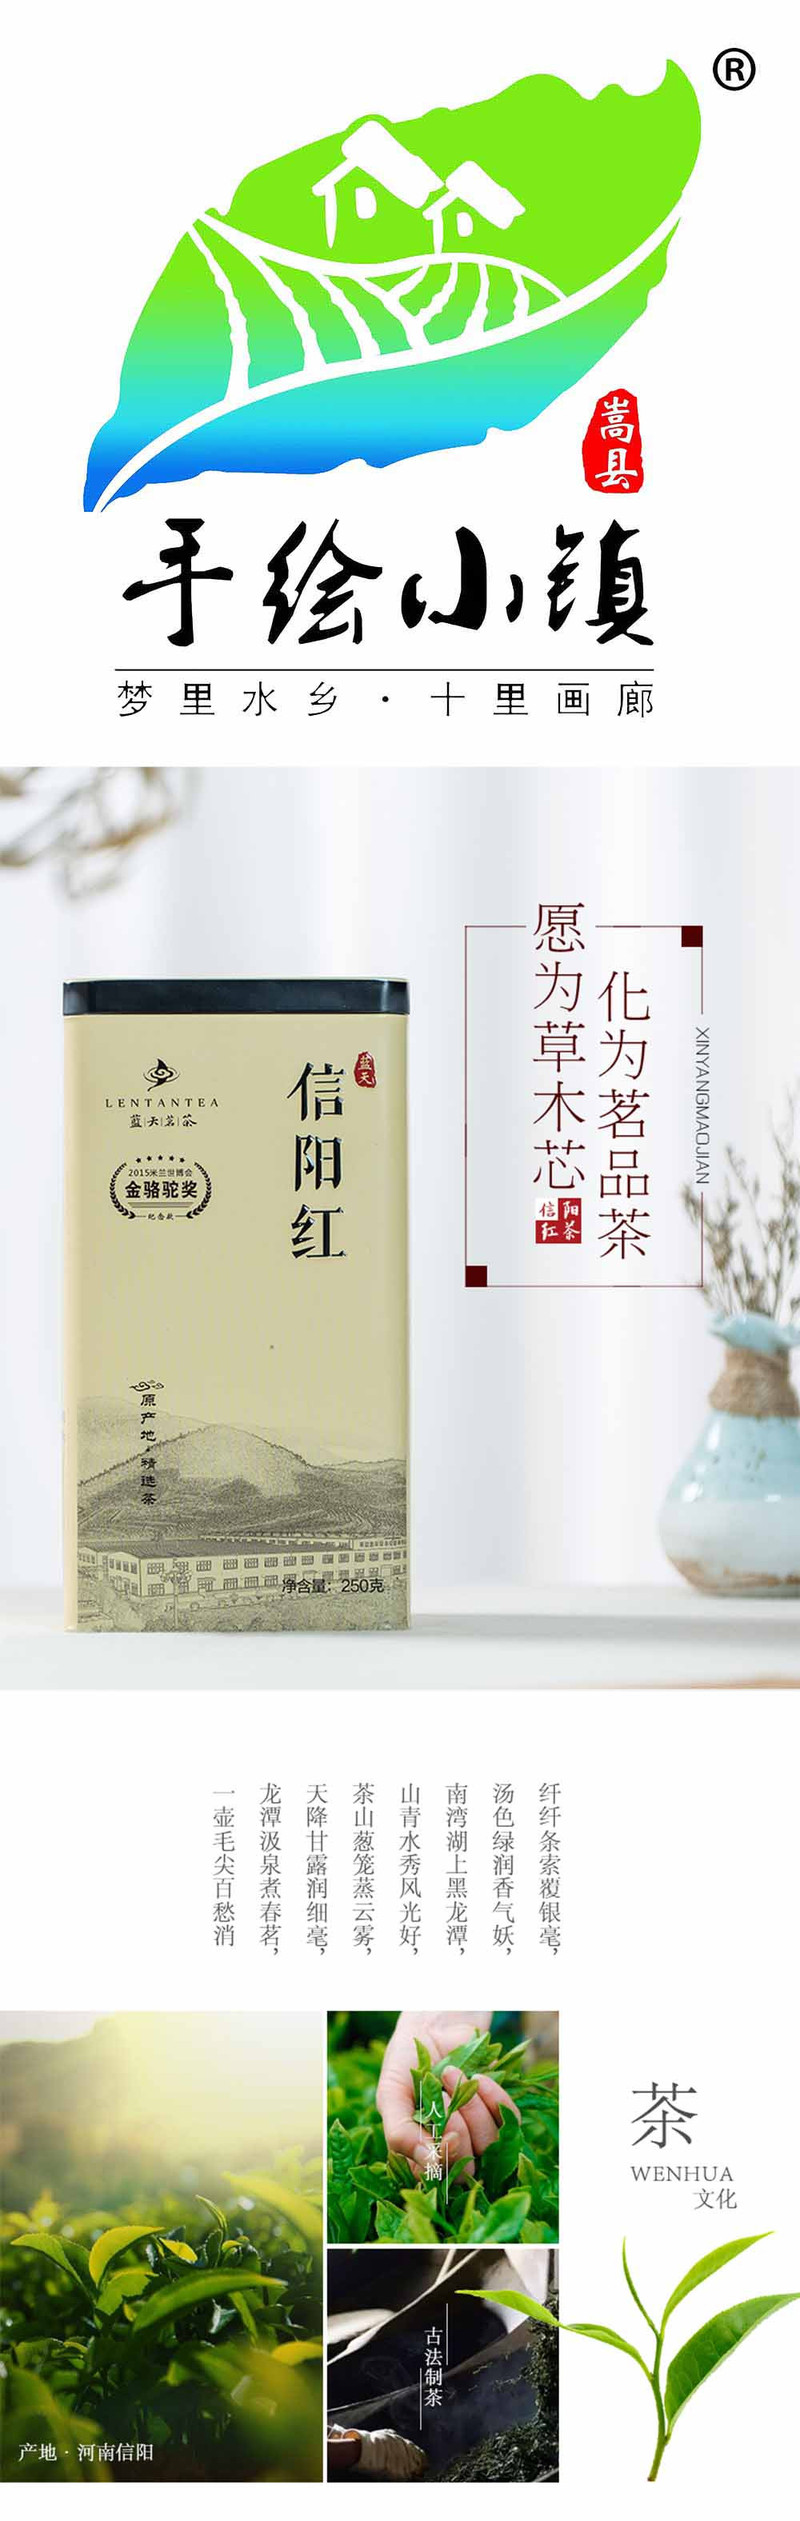  洛阳农品 蓝天茗茶 信阳红特级红茶250g当季新鲜茶叶